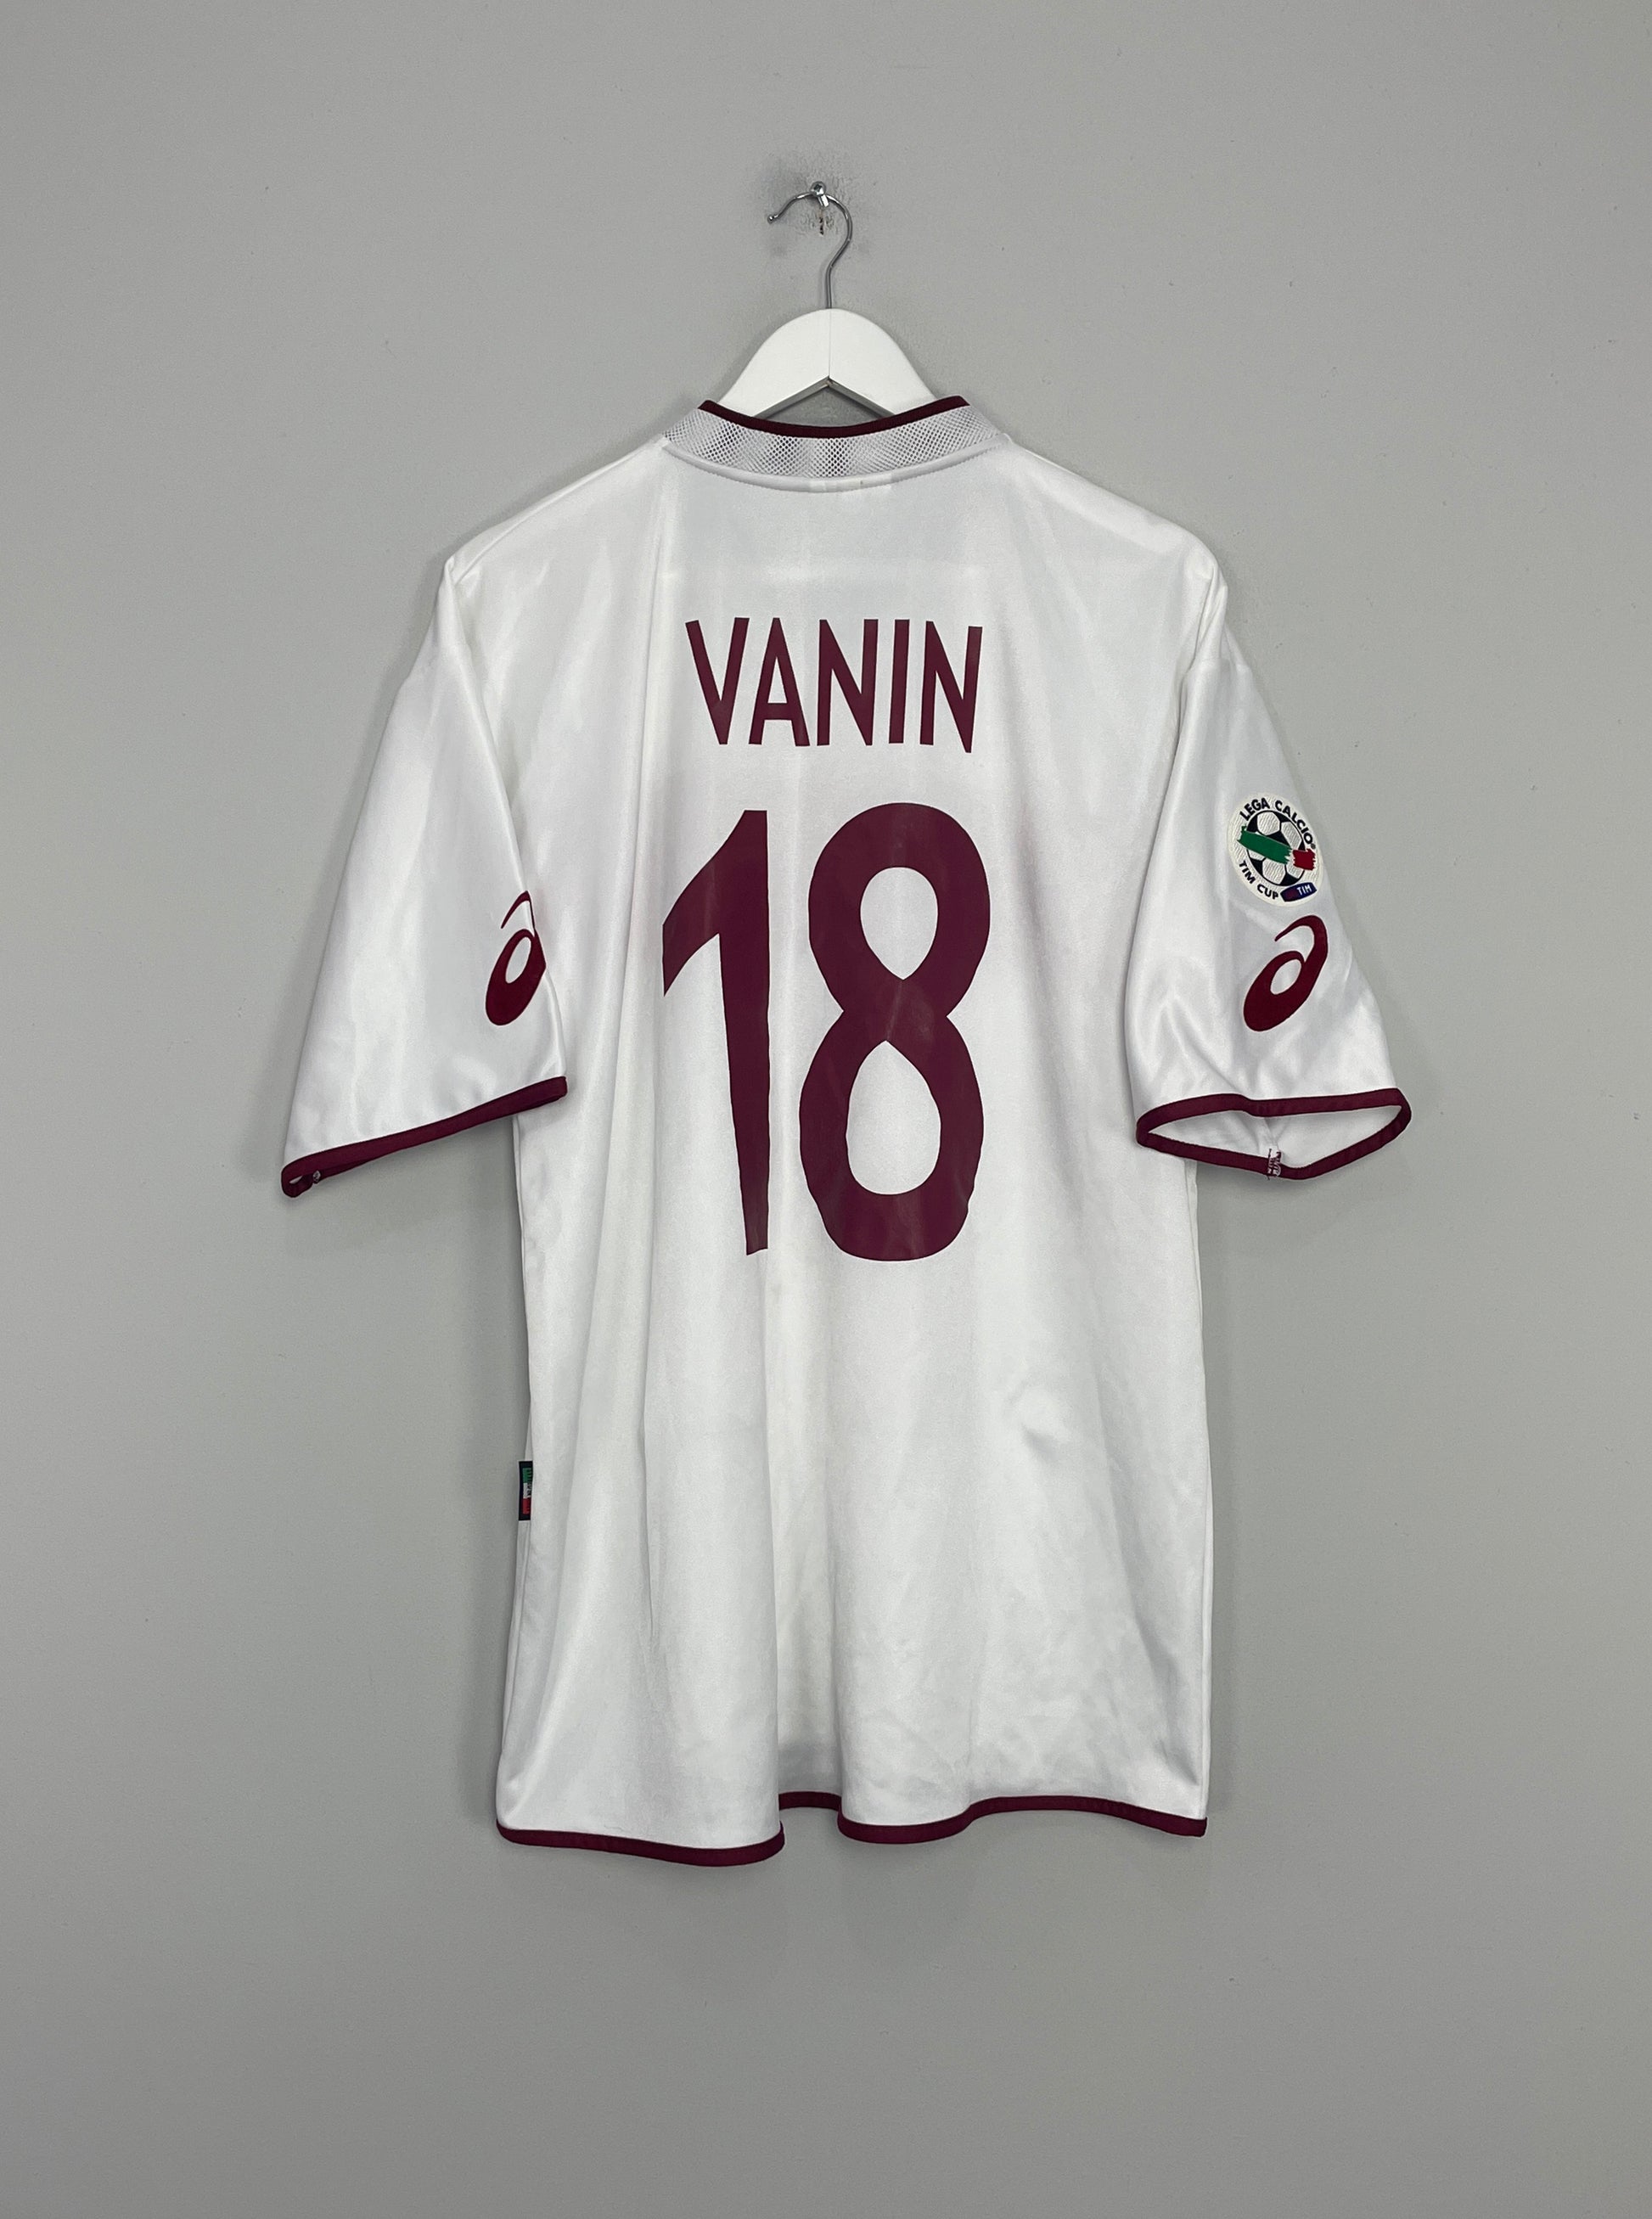 Image of the Torino Vanin shirt from the 2004/05 season